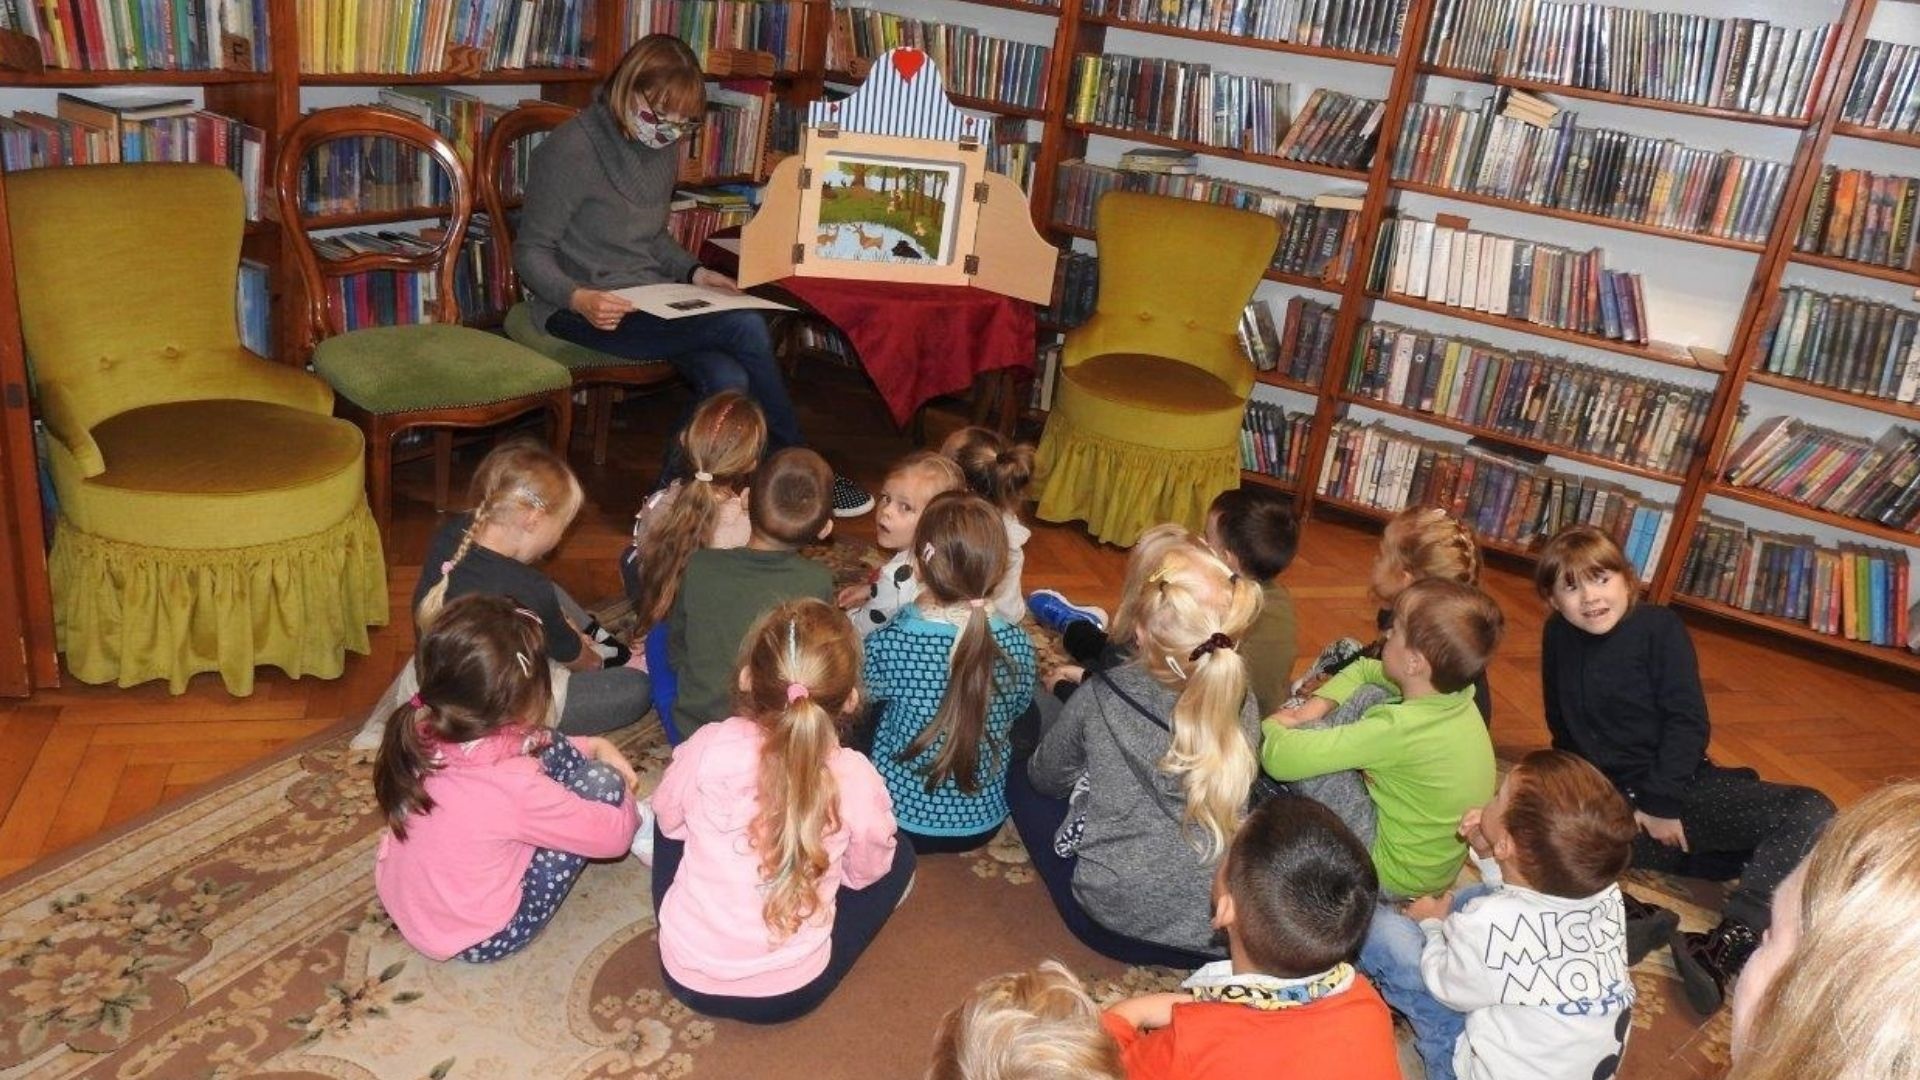 Jedna osoba siedzi przodem do grupy dzieci. Obok niej na stole drewniane otwarte pudełko z kolorową planszą w środku. W tle regały z książkami.